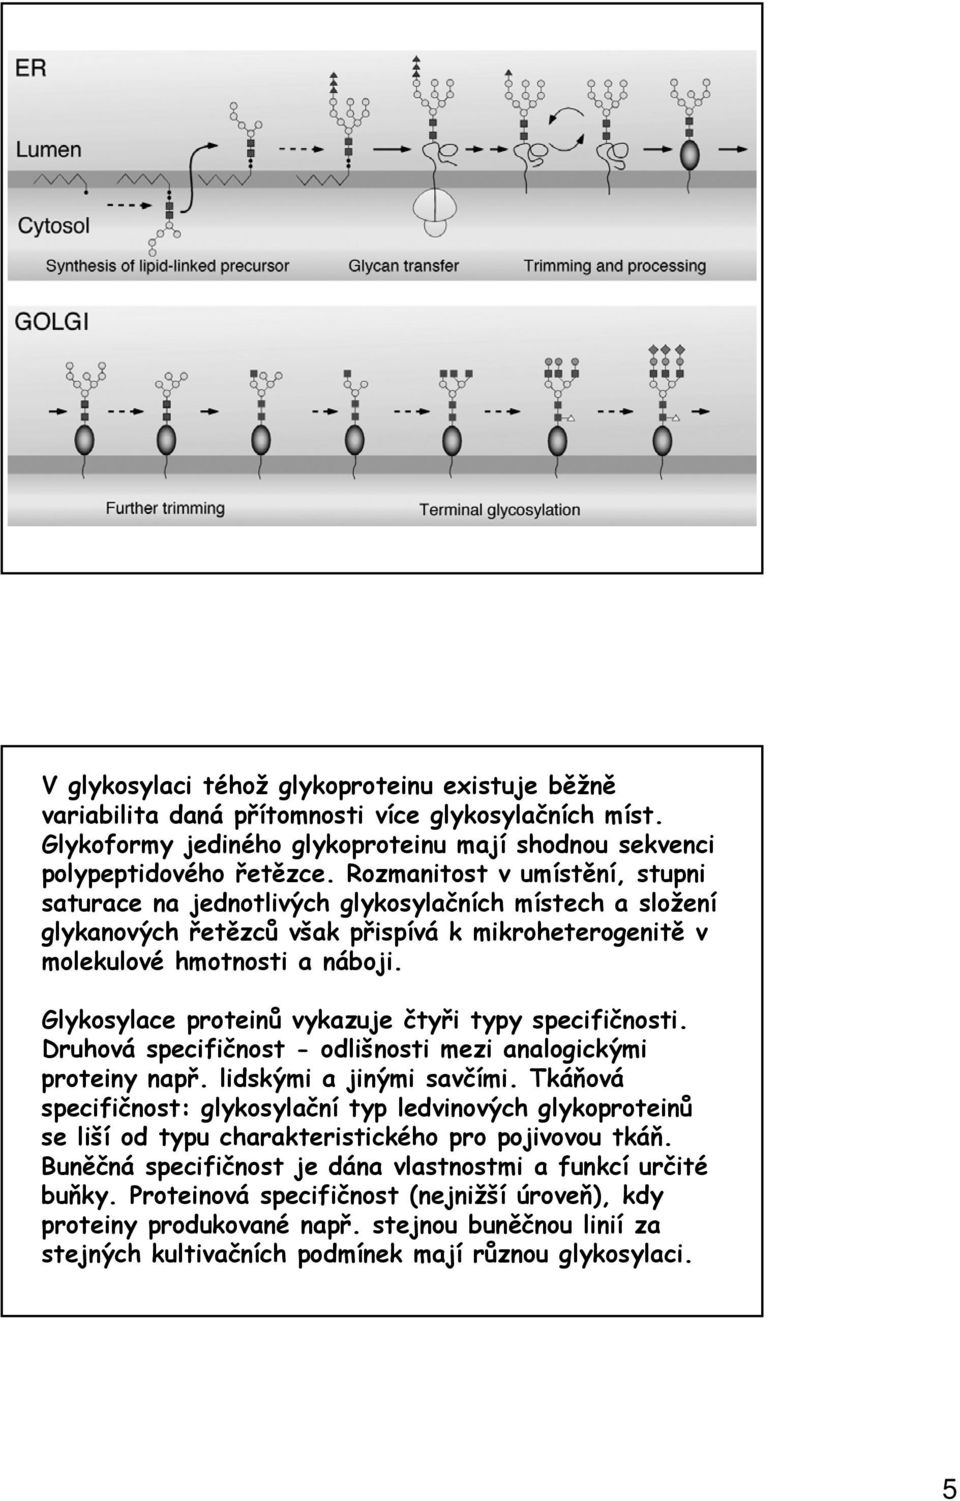 Glykosylace proteinů vykazuje čtyři typy specifičnosti. Druhová specifičnost - odlišnosti mezi analogickými proteiny např. lidskými a jinými savčími.